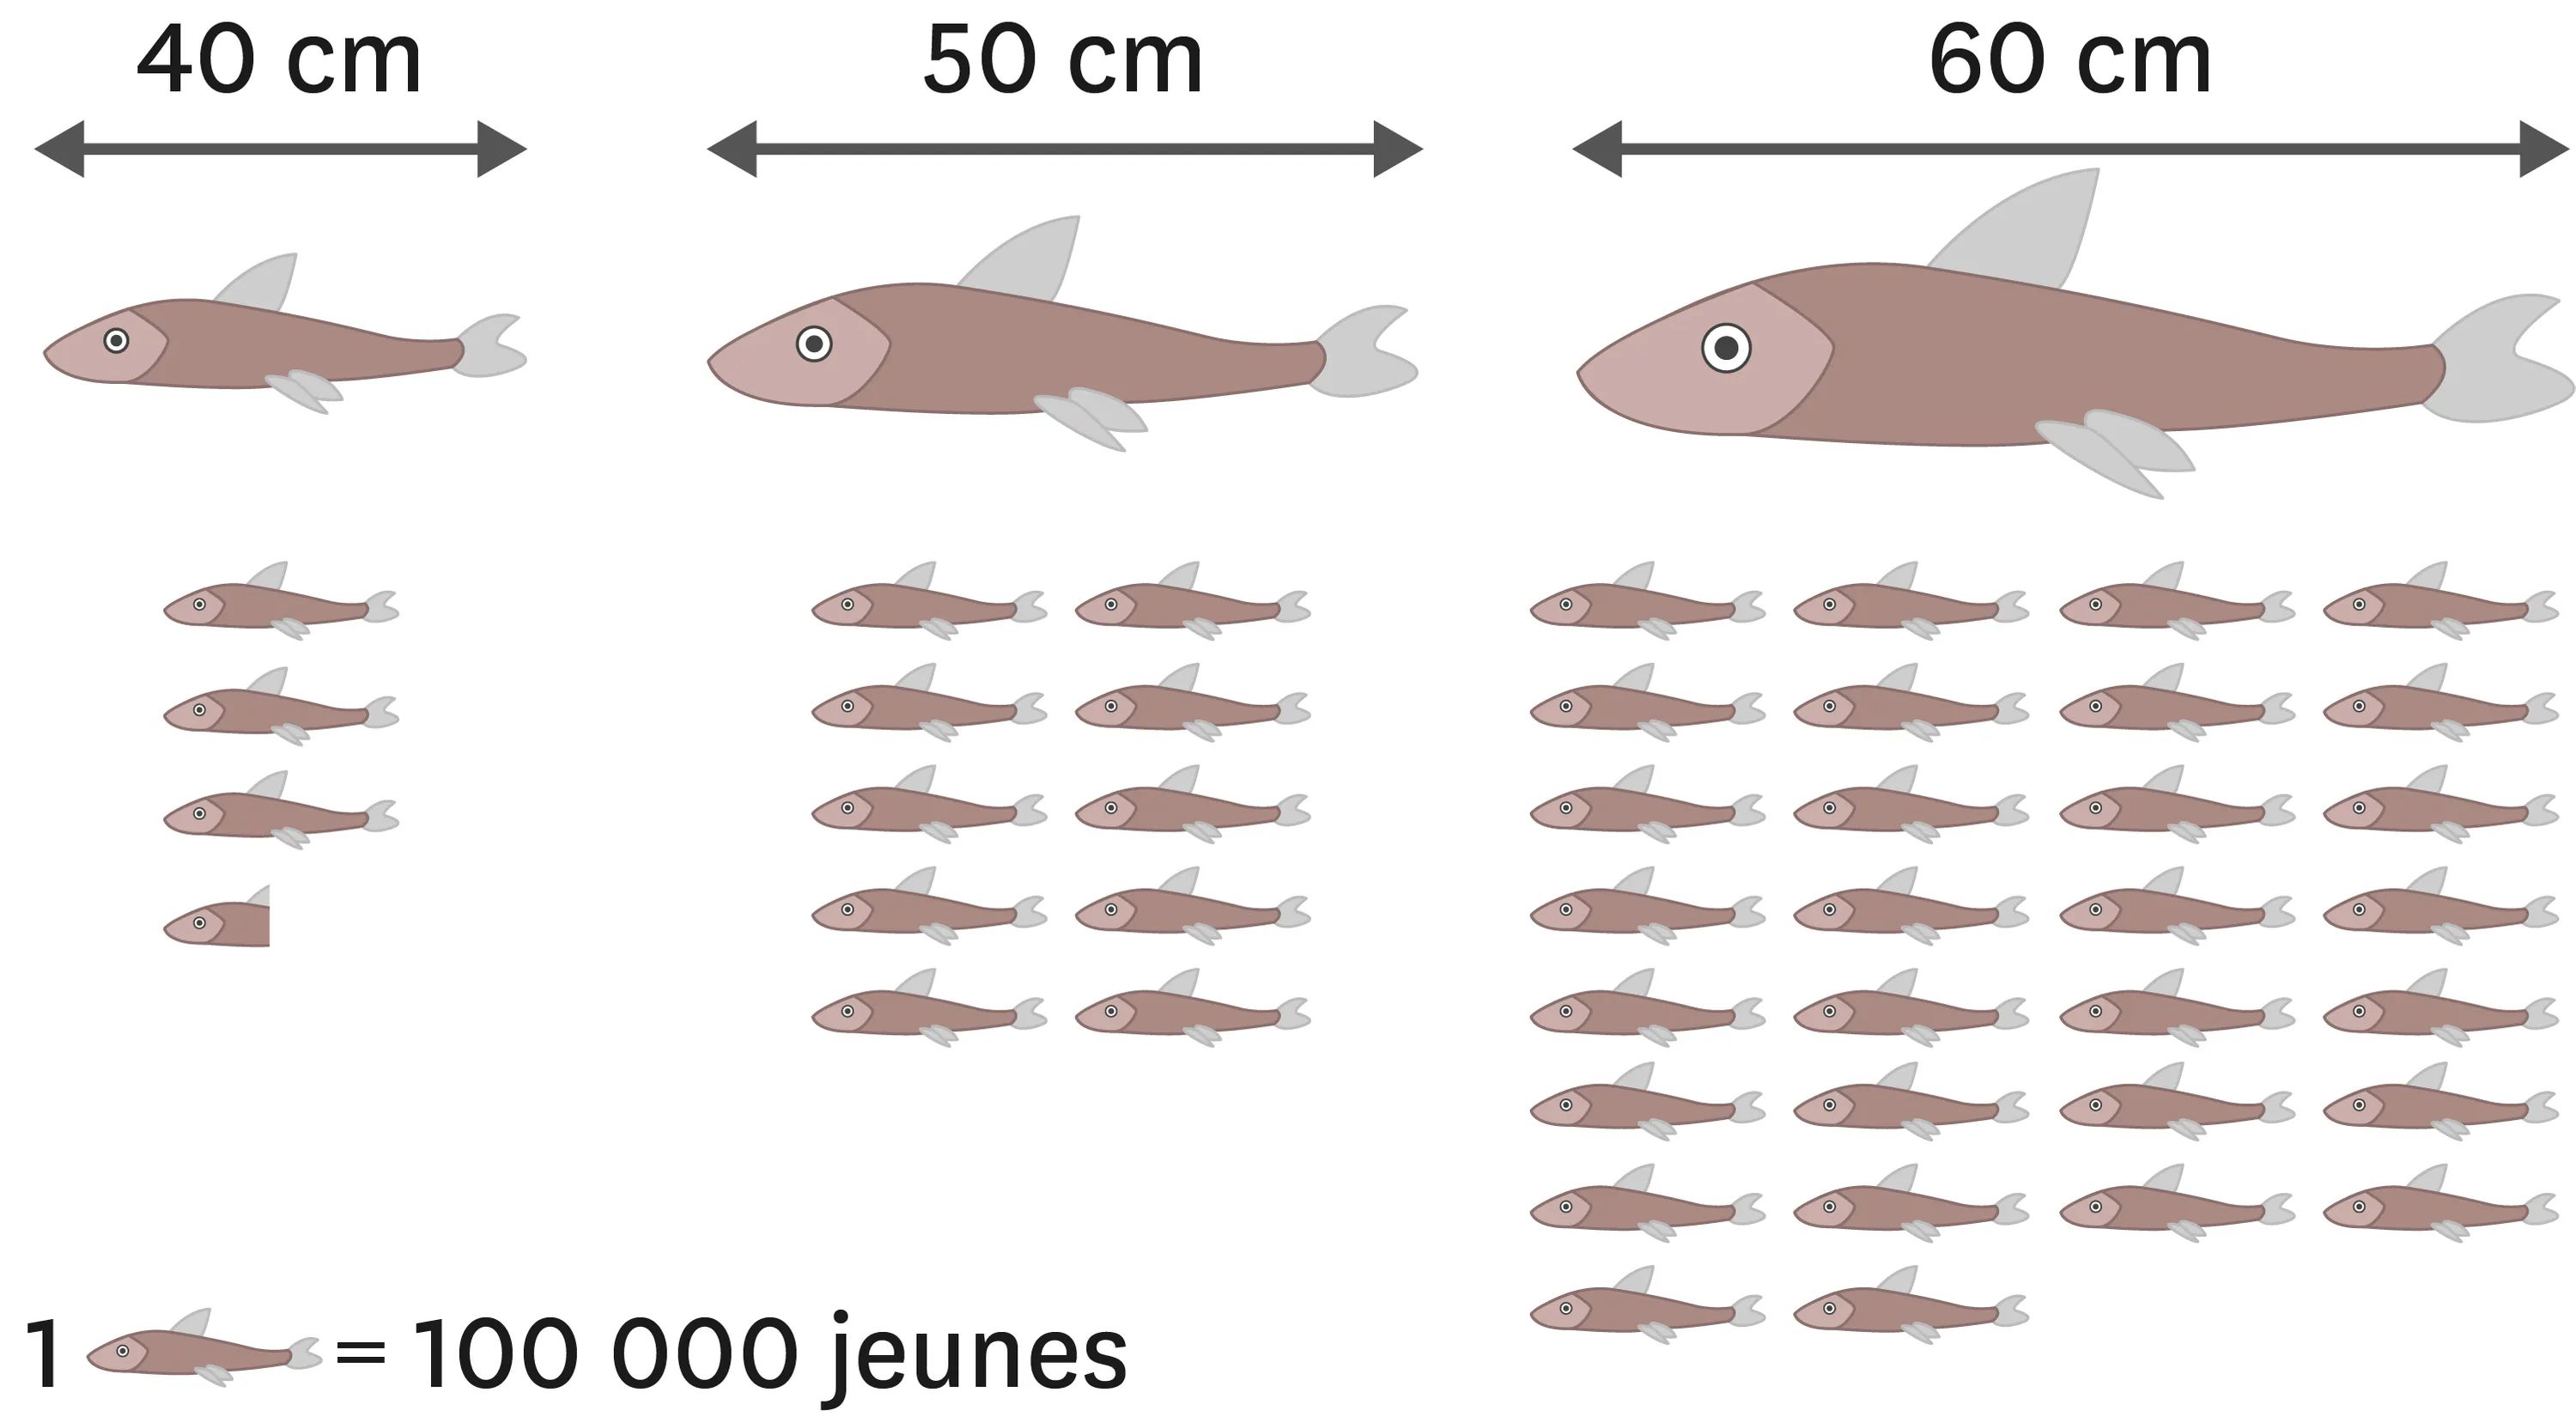 L'effet de la taille des poissons adultes sur leur capacité de reproduction. Plus le poisson est grand, plus il peut se reproduire. 
  Un poisson de 40 cm peut avoir 350 000 jeunes.
  Un poisson de 50 cm peut avoir 1 000 000 jeunes.
  Un poisson de 40 cm peut avoir 3 000 000 jeunes.